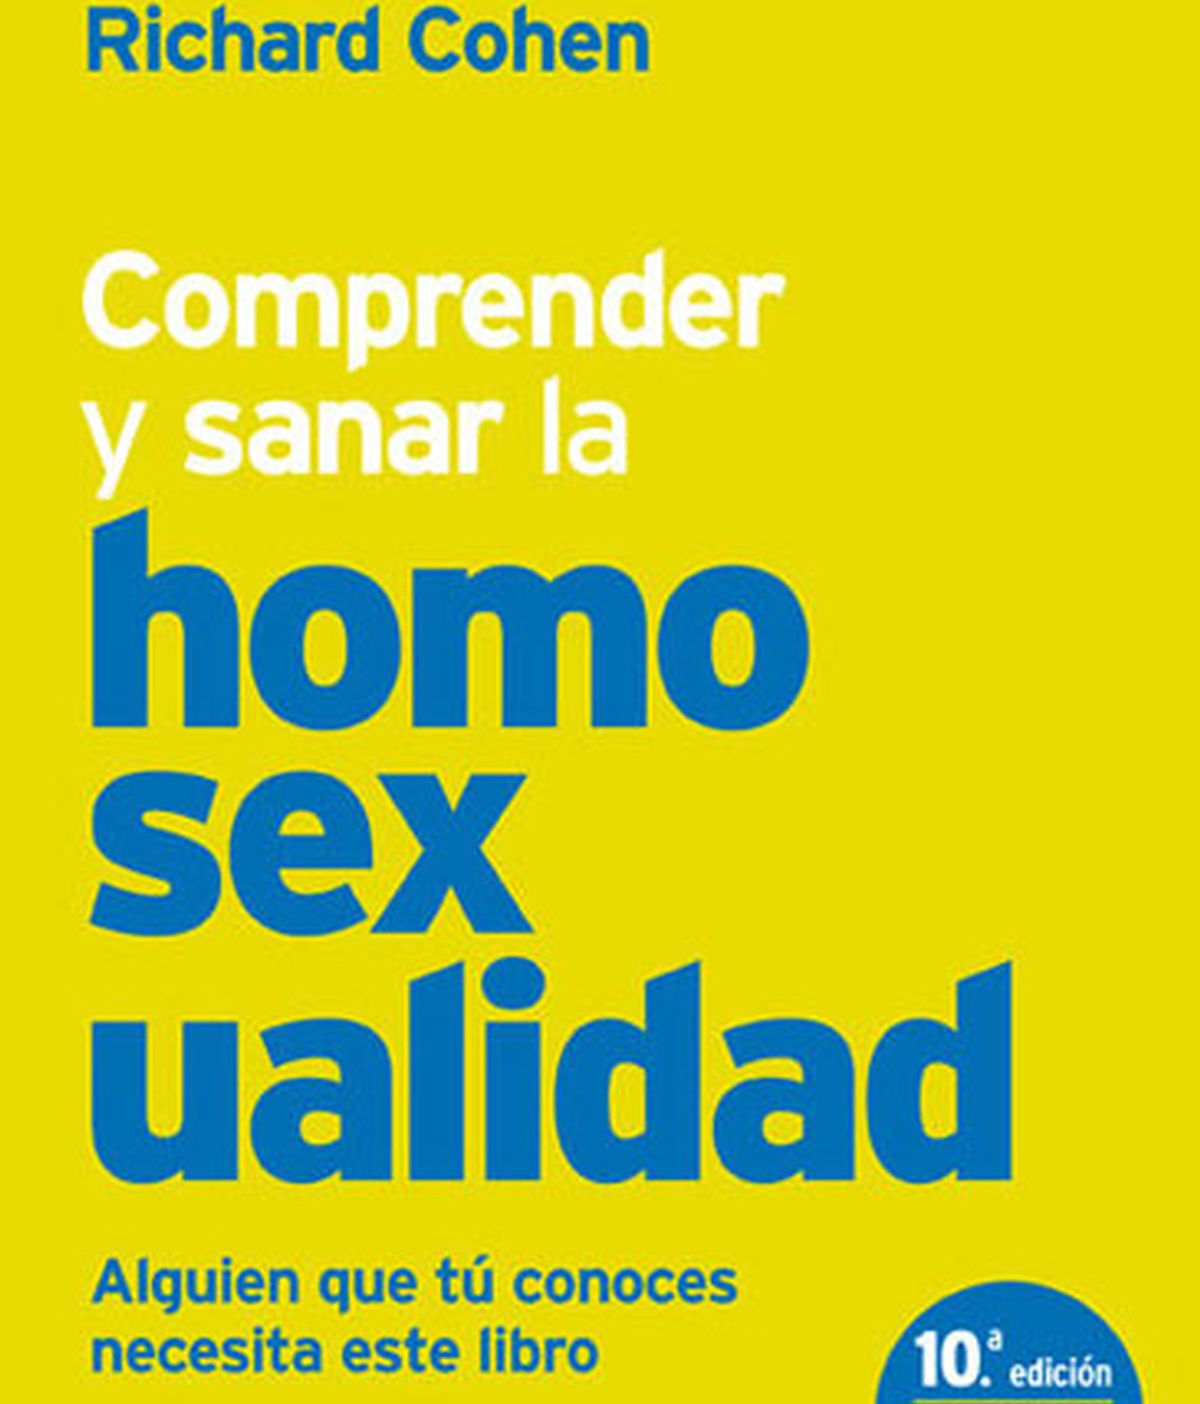 Cataluña estudia la retirada cautelar contra un libro que propone "sanar la homosexualidad"